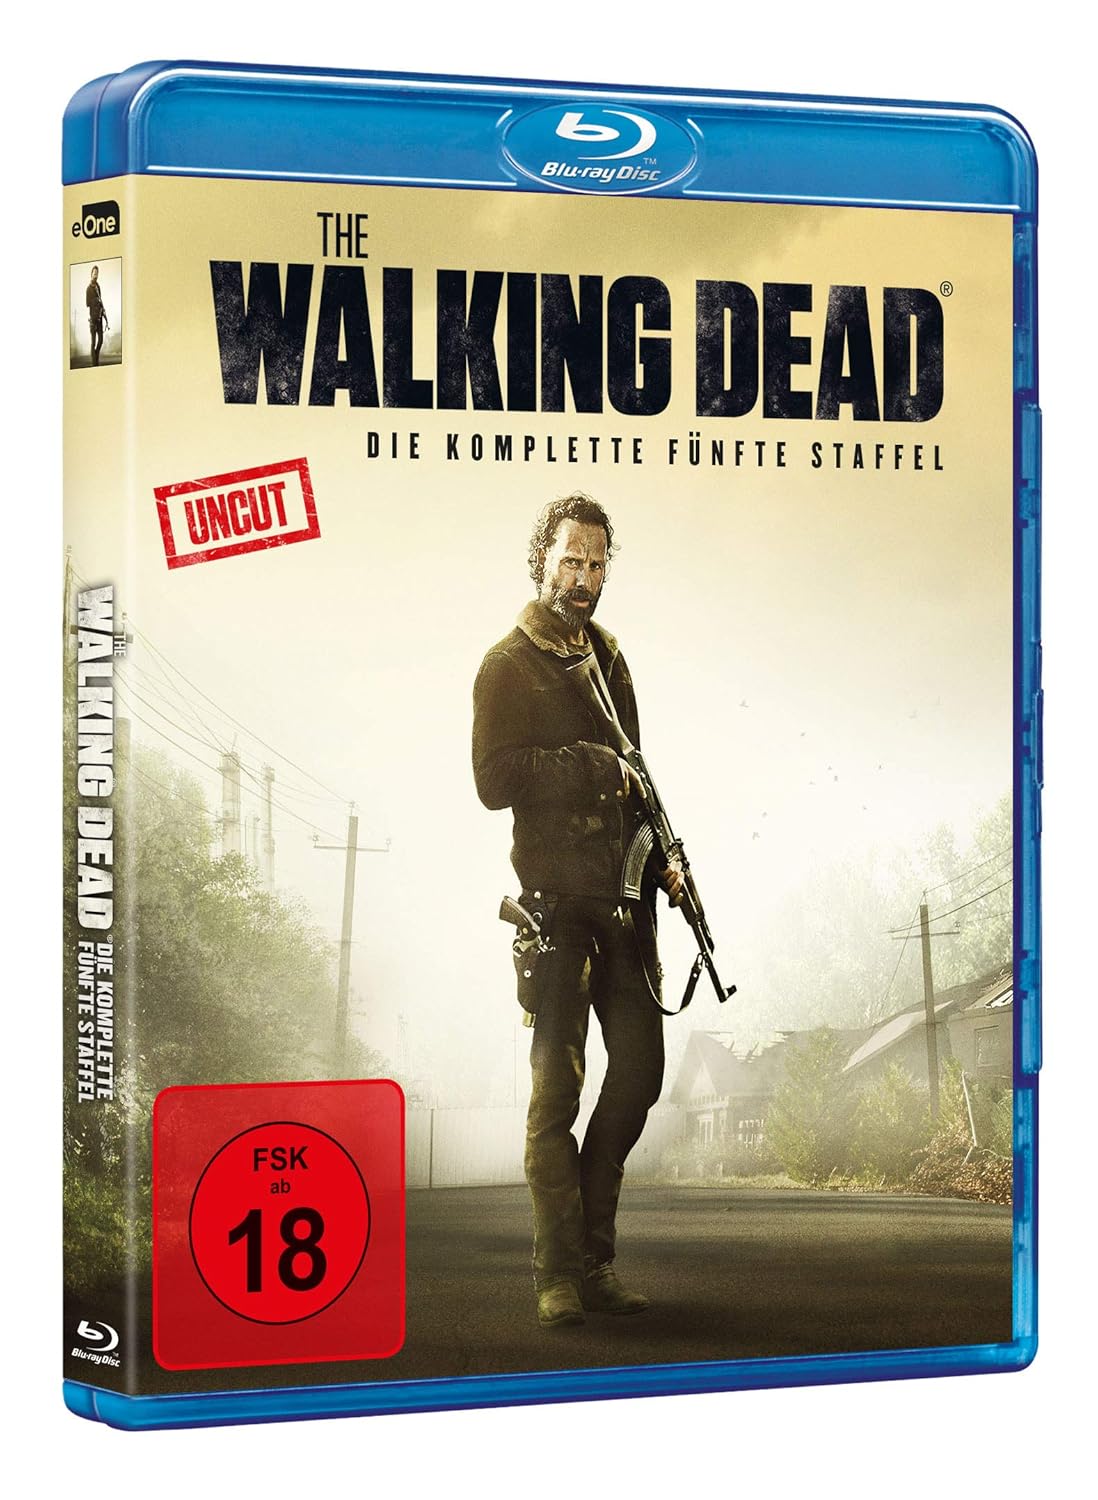 The Walking Dead – Staffel 5 – Uncut [Blu-ray]